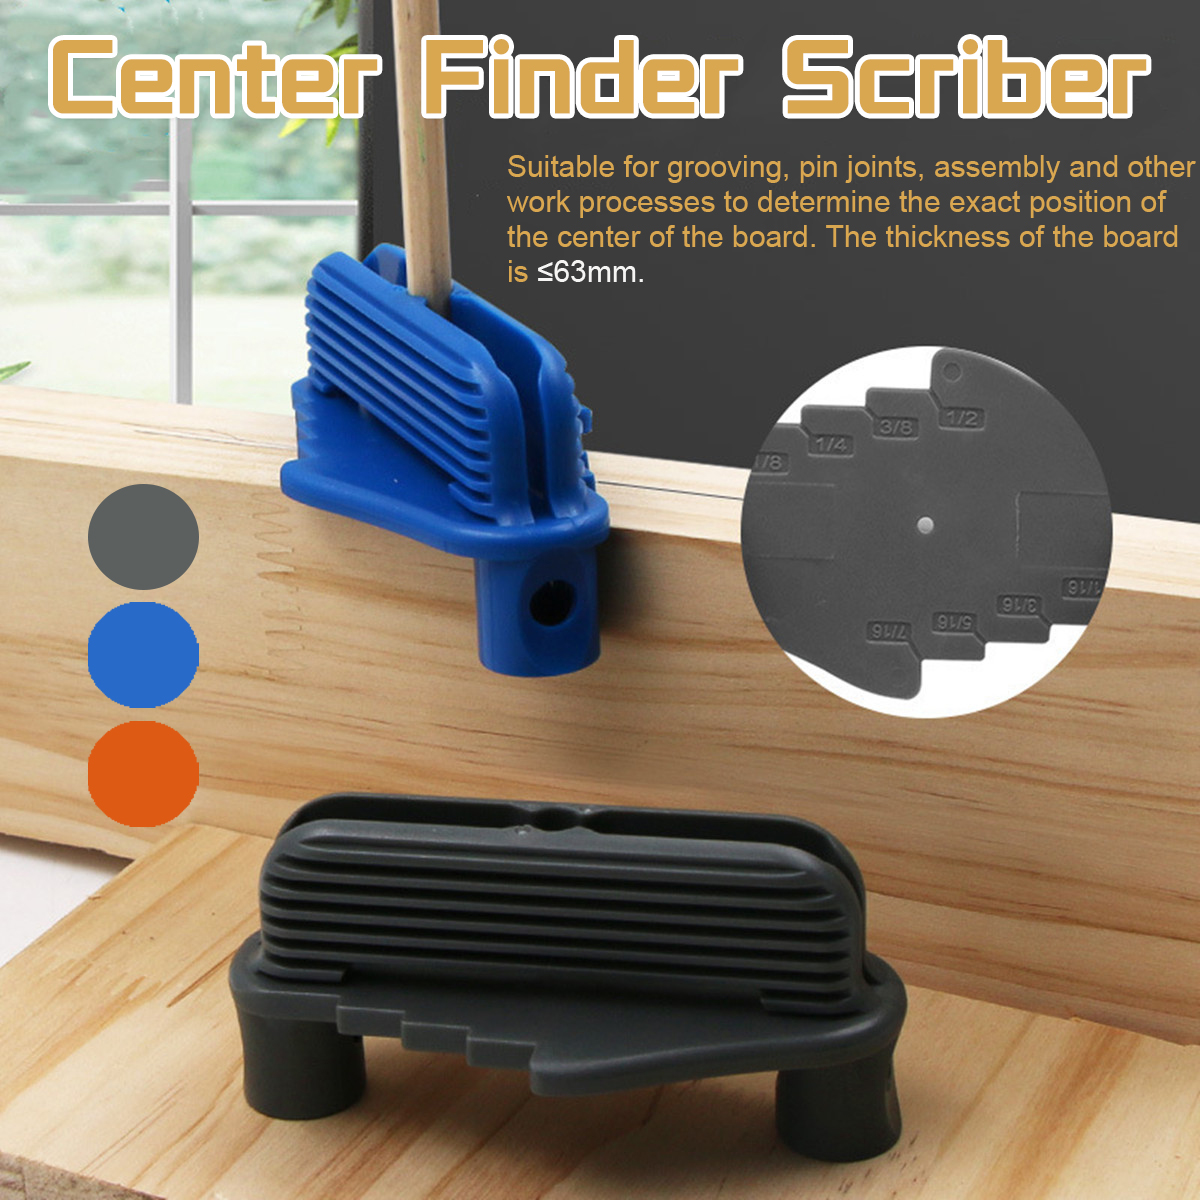 Multi-function-Marking-Center-Finder-Scriber-Woodworking-Marking-Gauge-Scriber-1715630-1